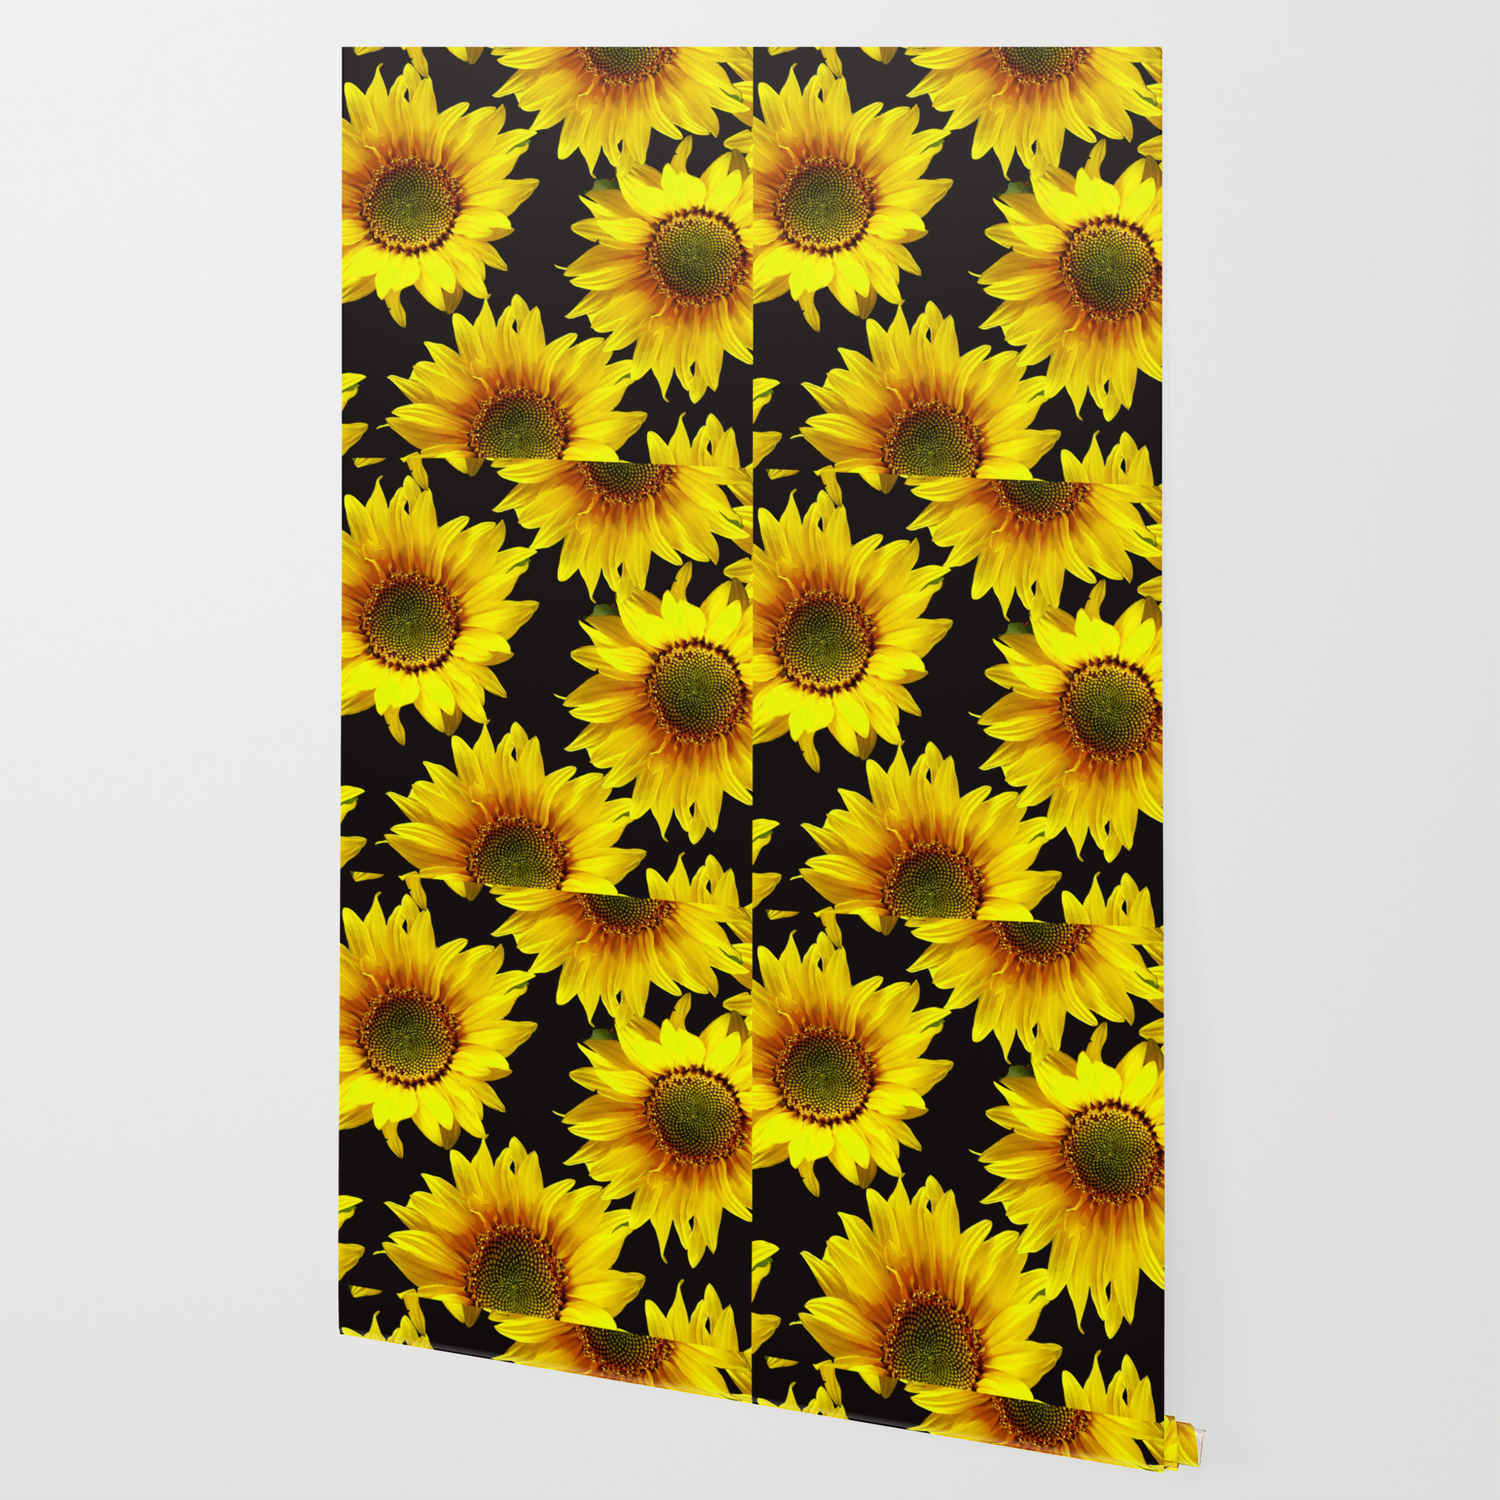 Large Sunflowers On A Black Background Decor Society6 Buyart